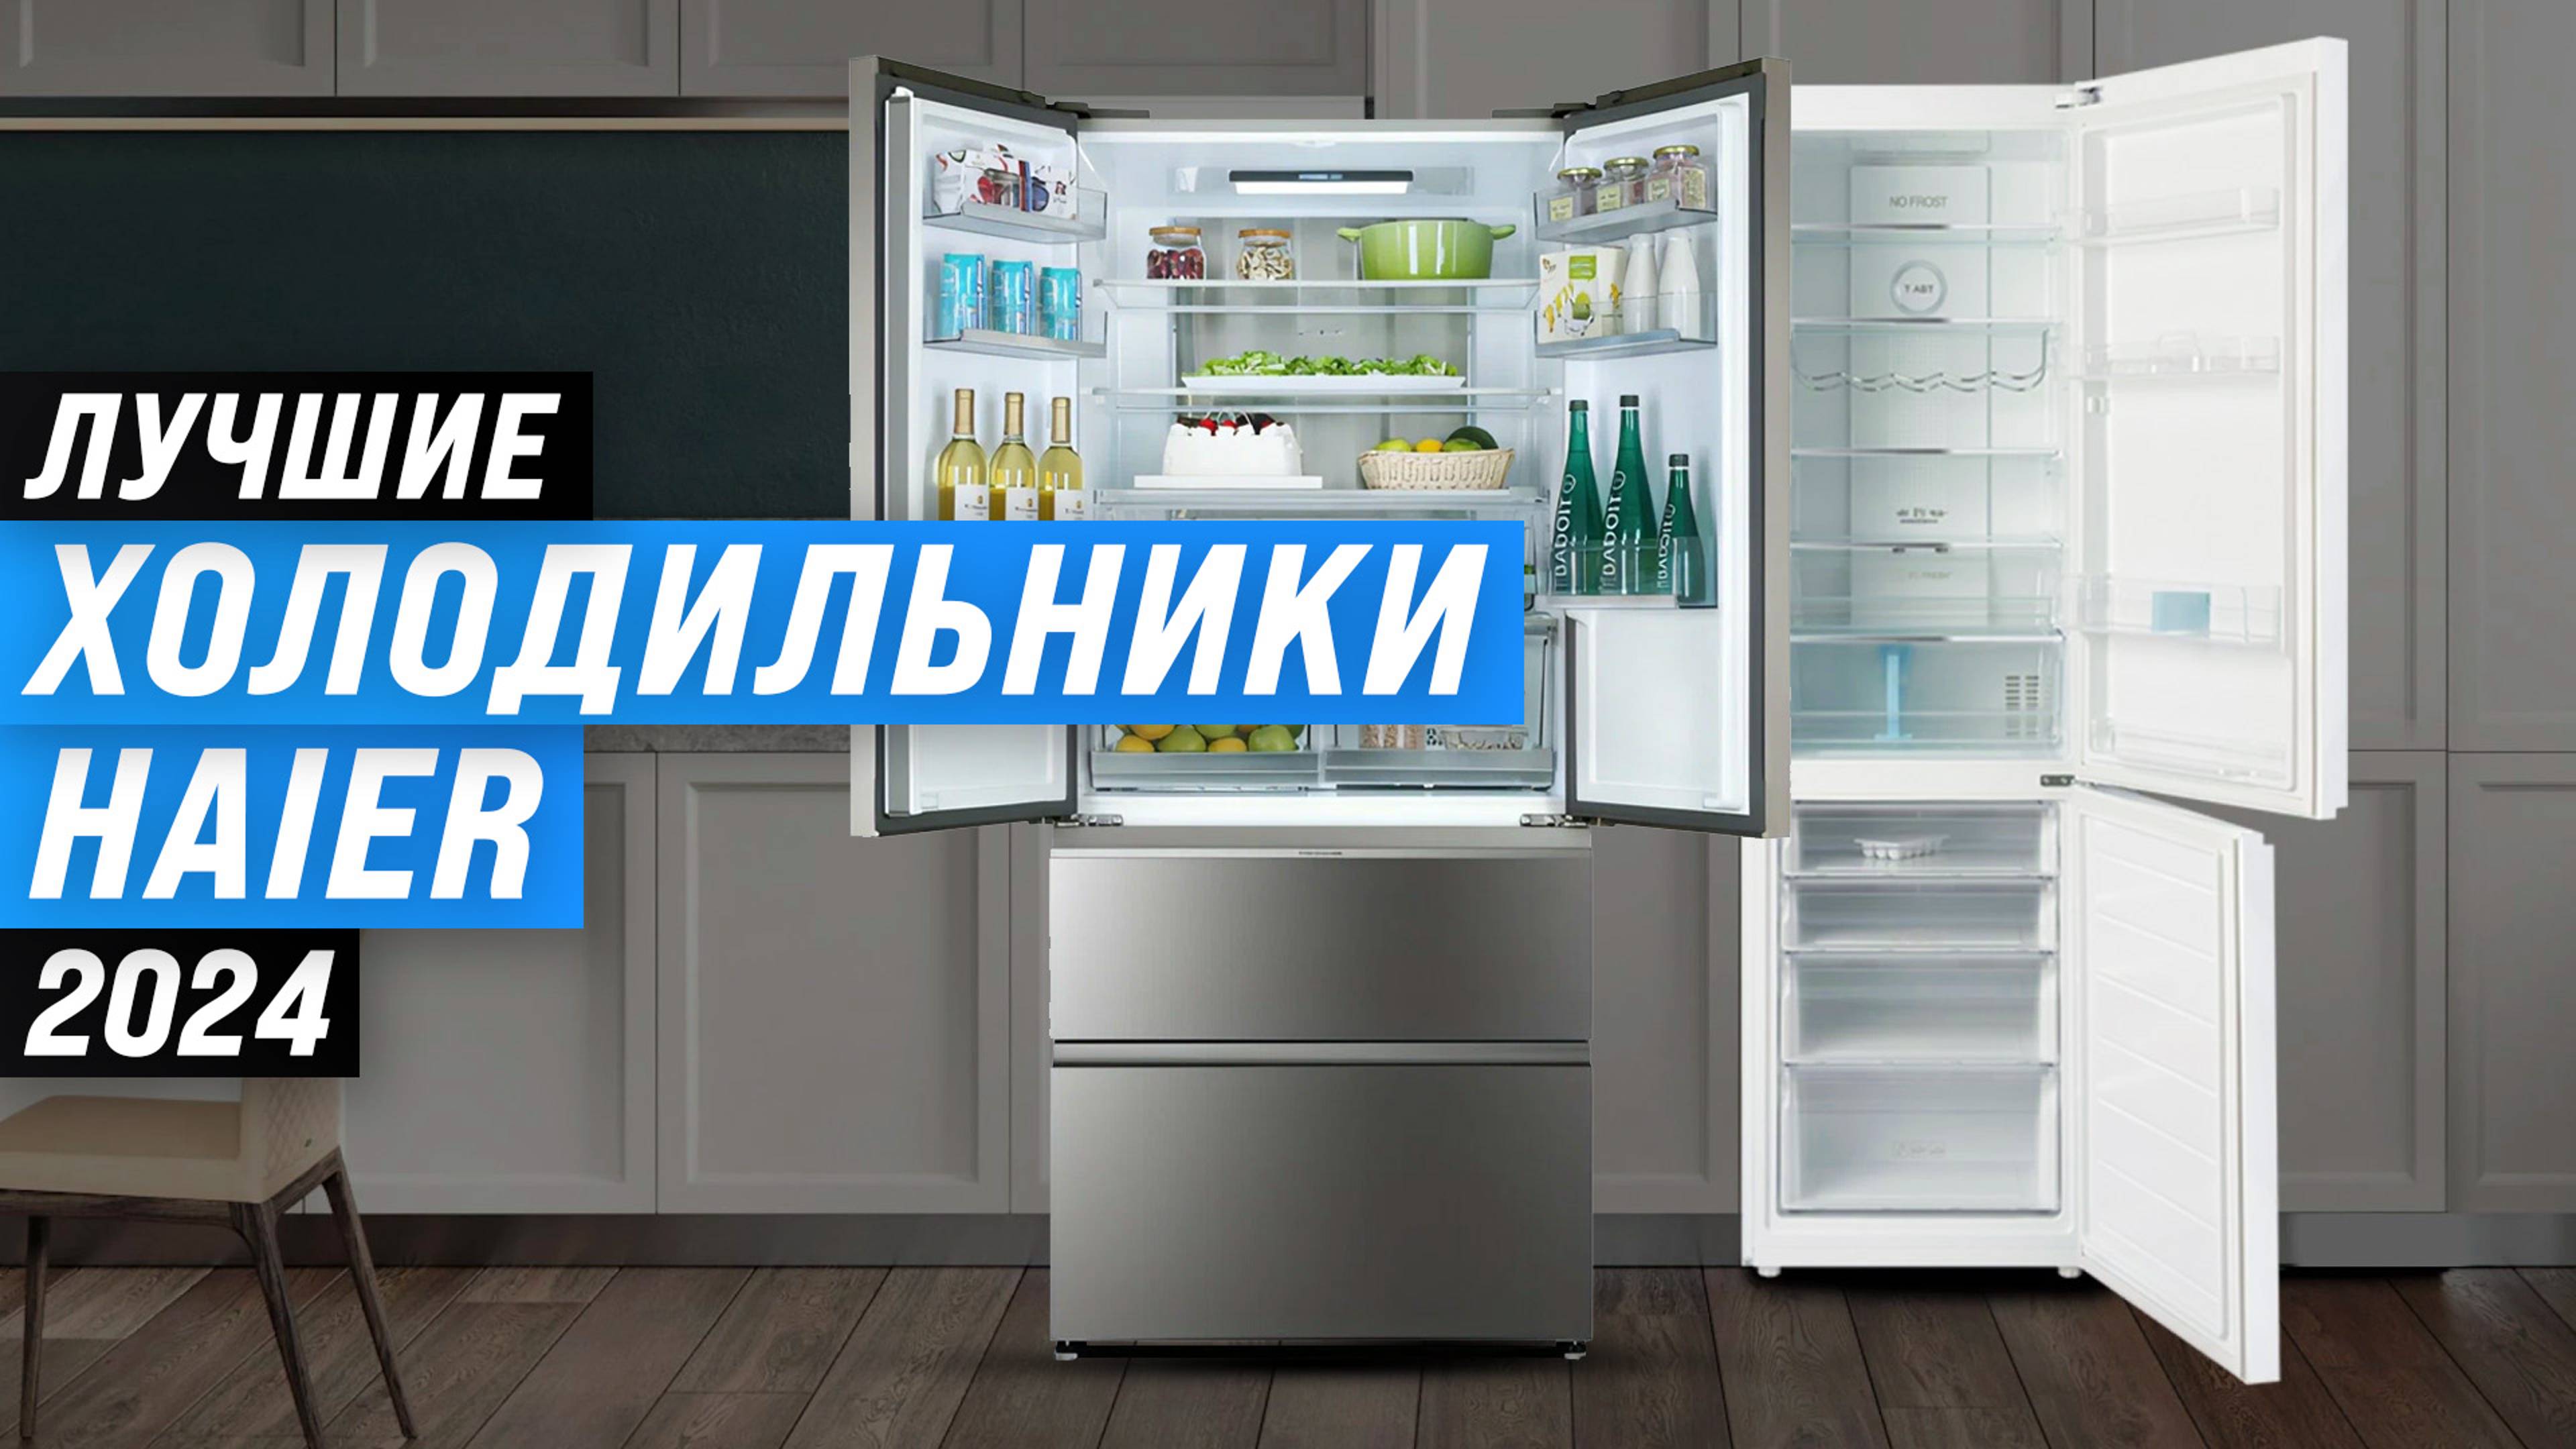 ТОП–5. Лучшие холодильники Haier 2024 года: Какой выбрать для современной кухни?